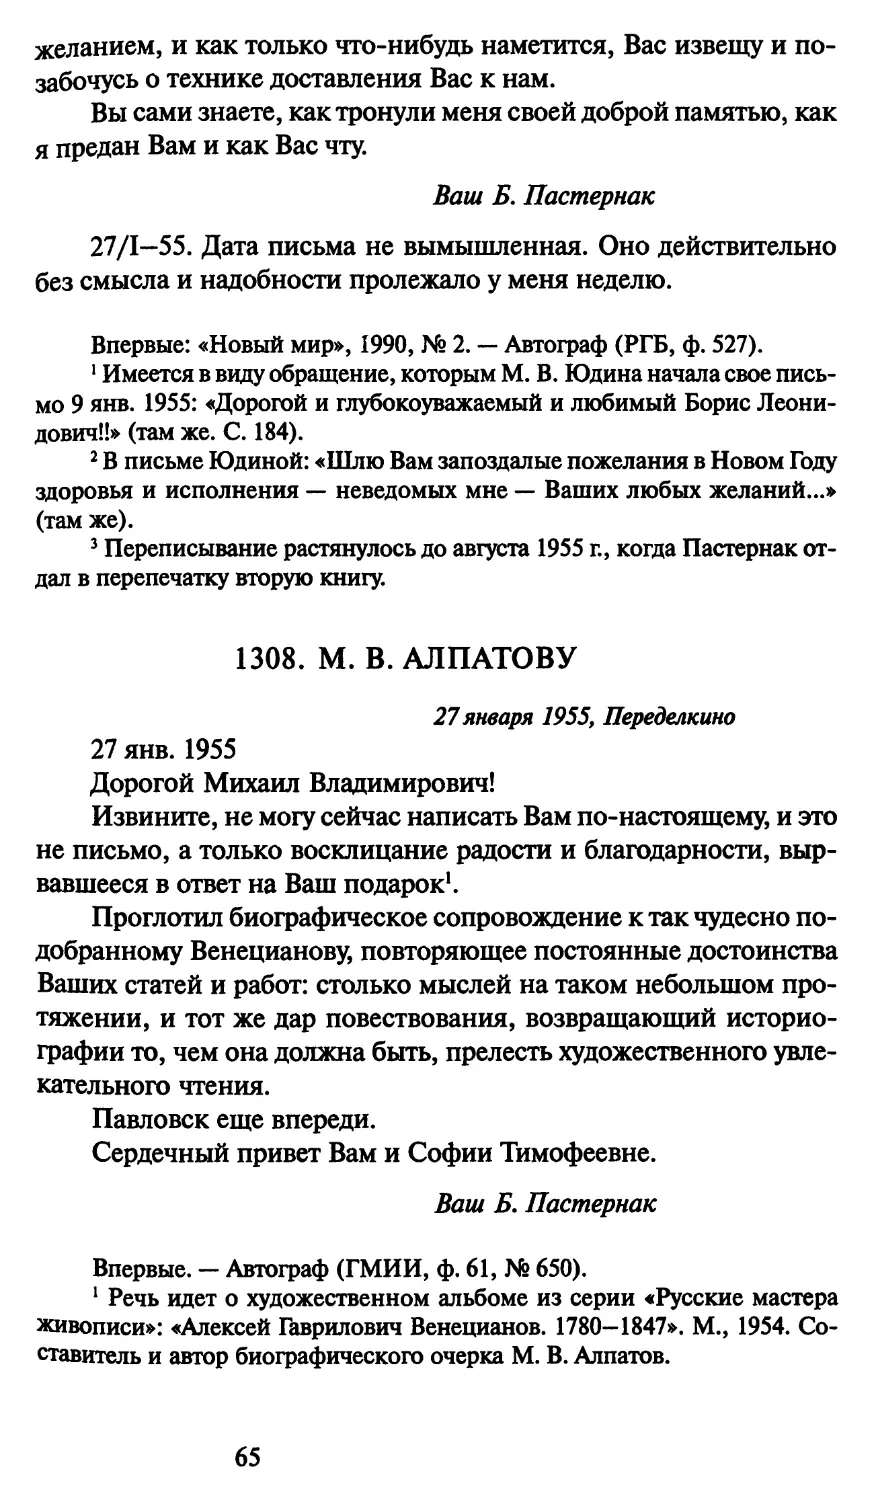 1308. М. В. Алпатову 27 января 1955